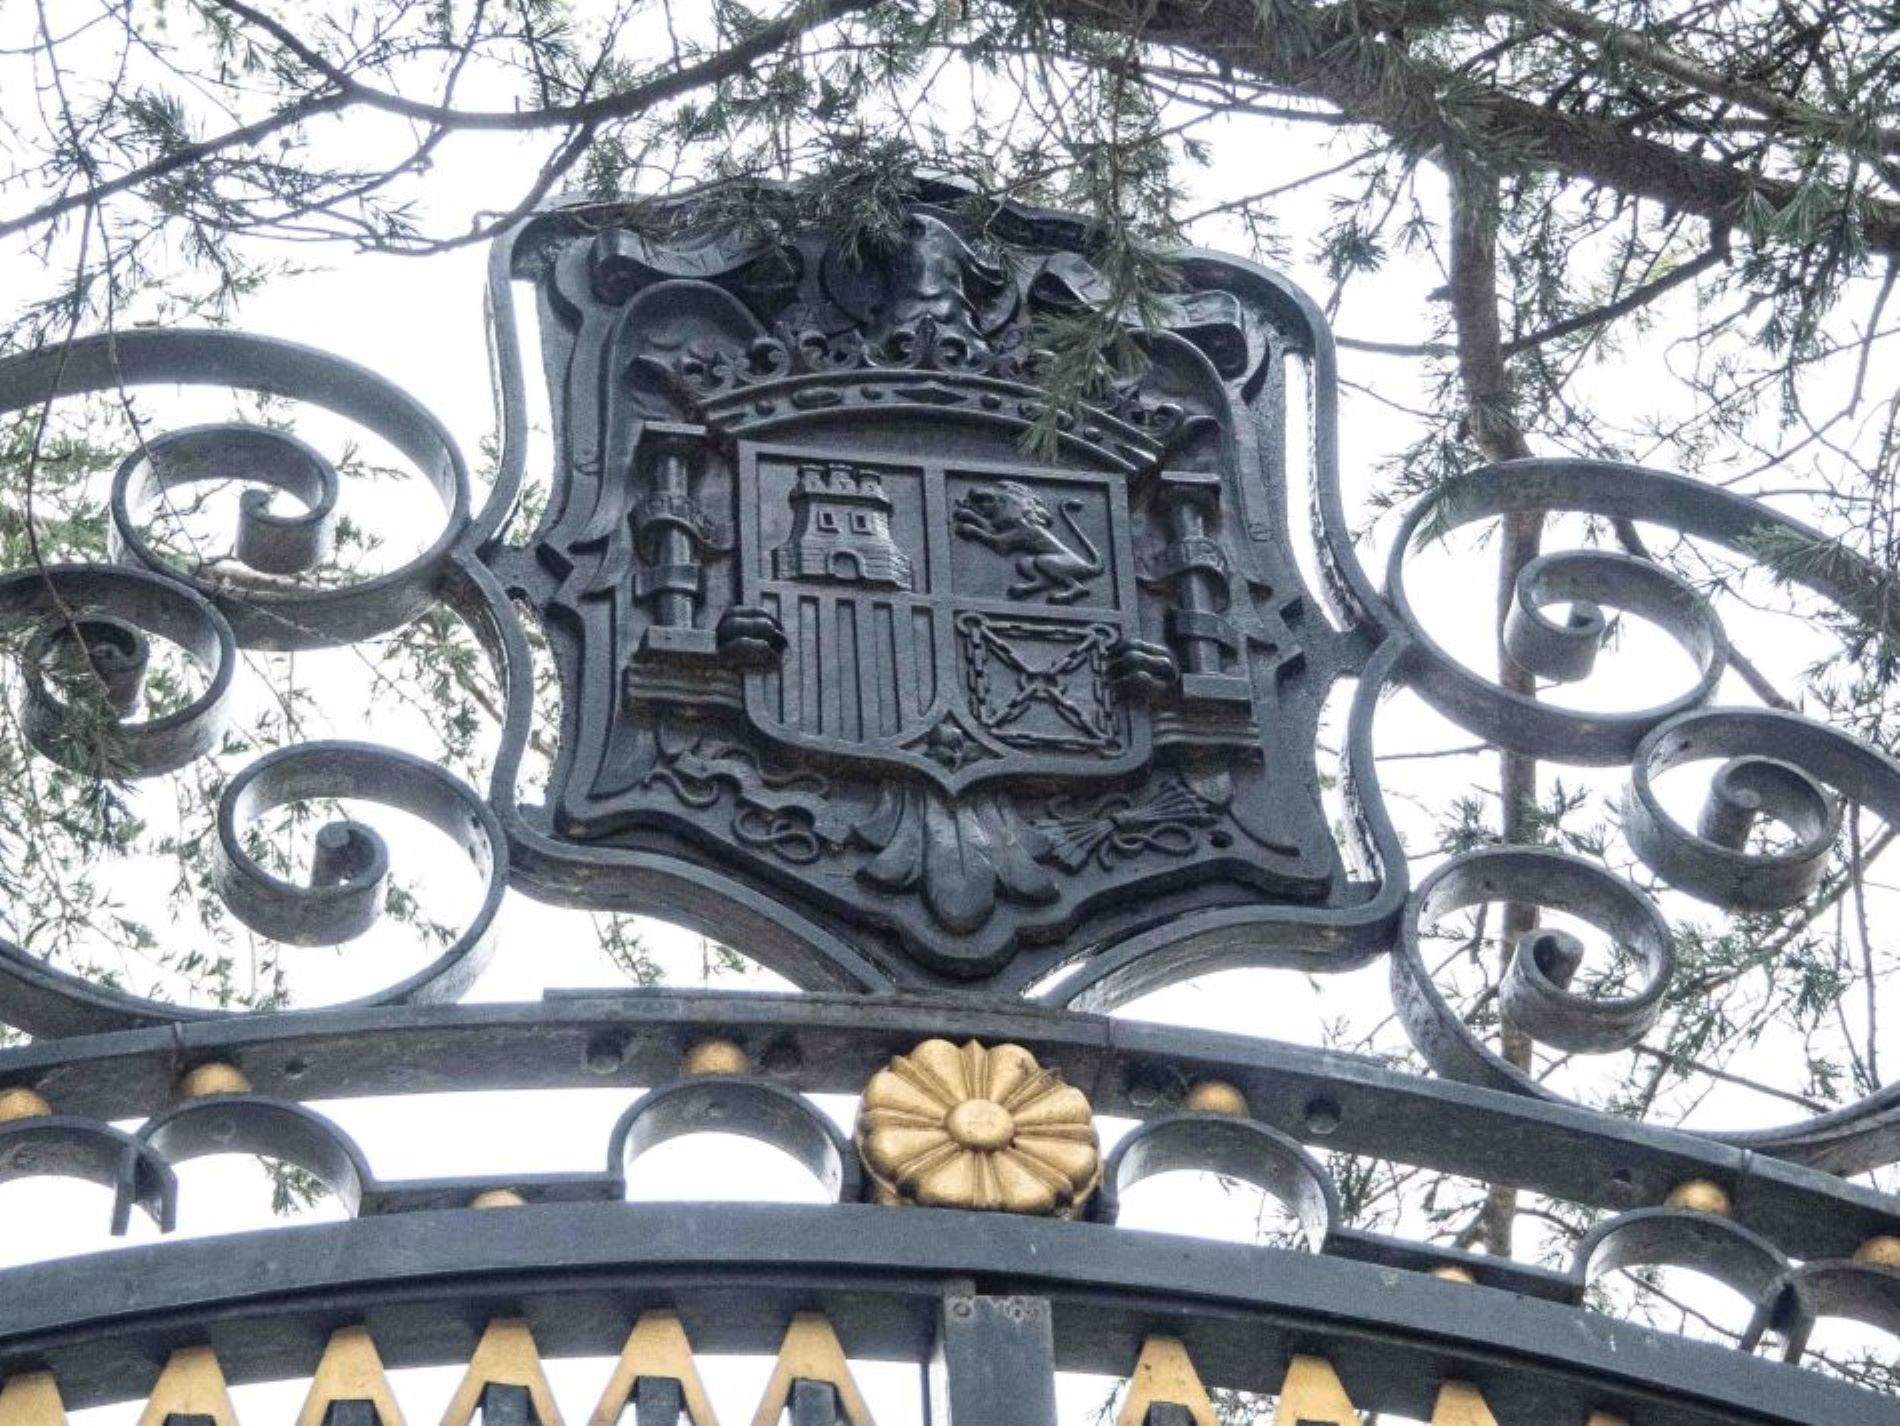 El govern espanyol retira els escuts franquistes del palau d'El Pardo, residència de Franco